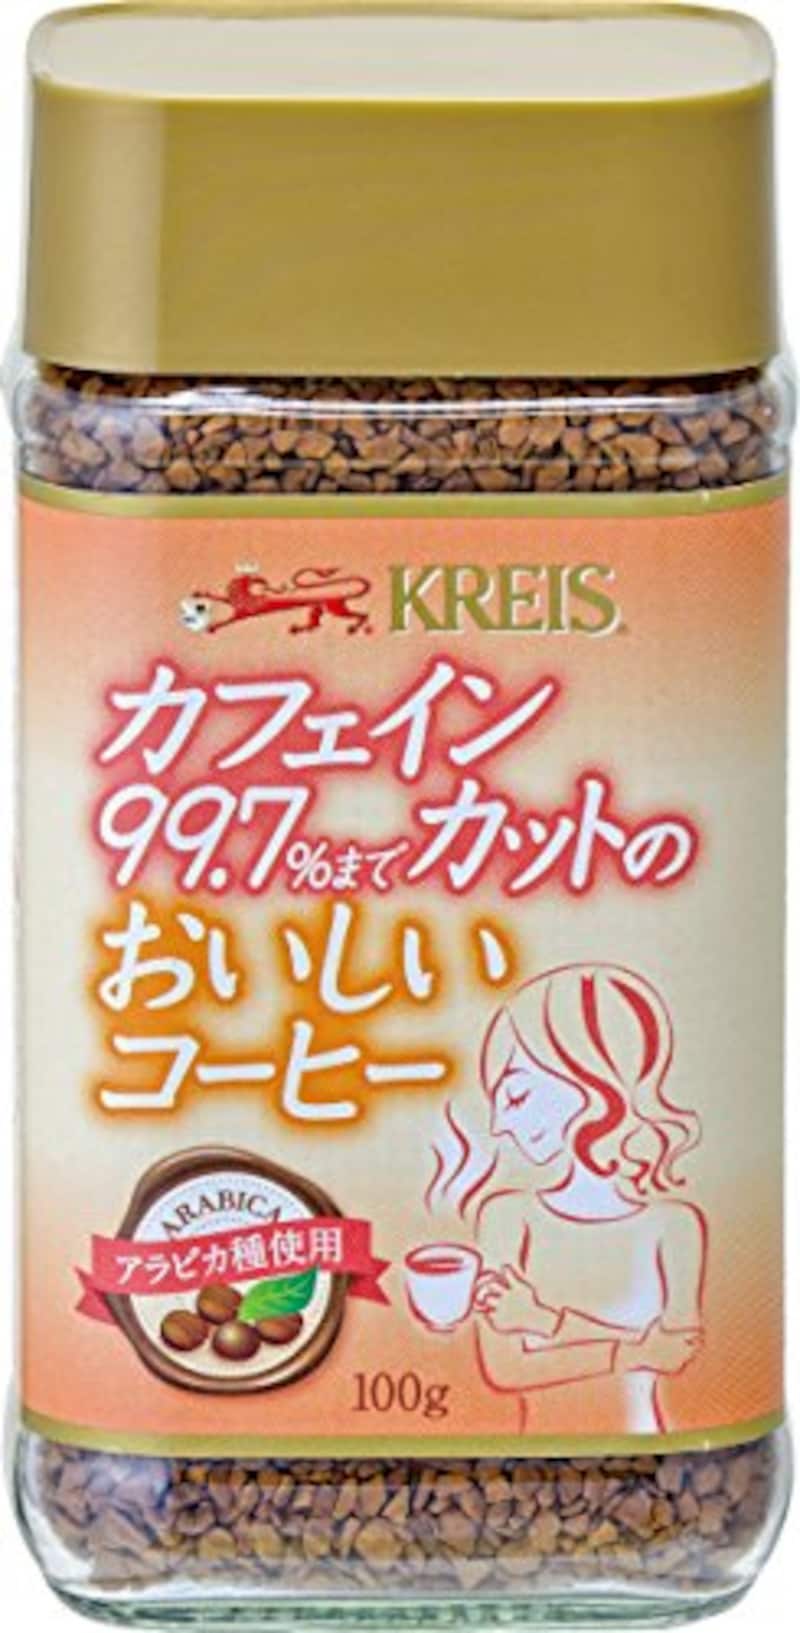 クライスカフェジャパン,カフェインカット99.7%のおいしいコーヒー 